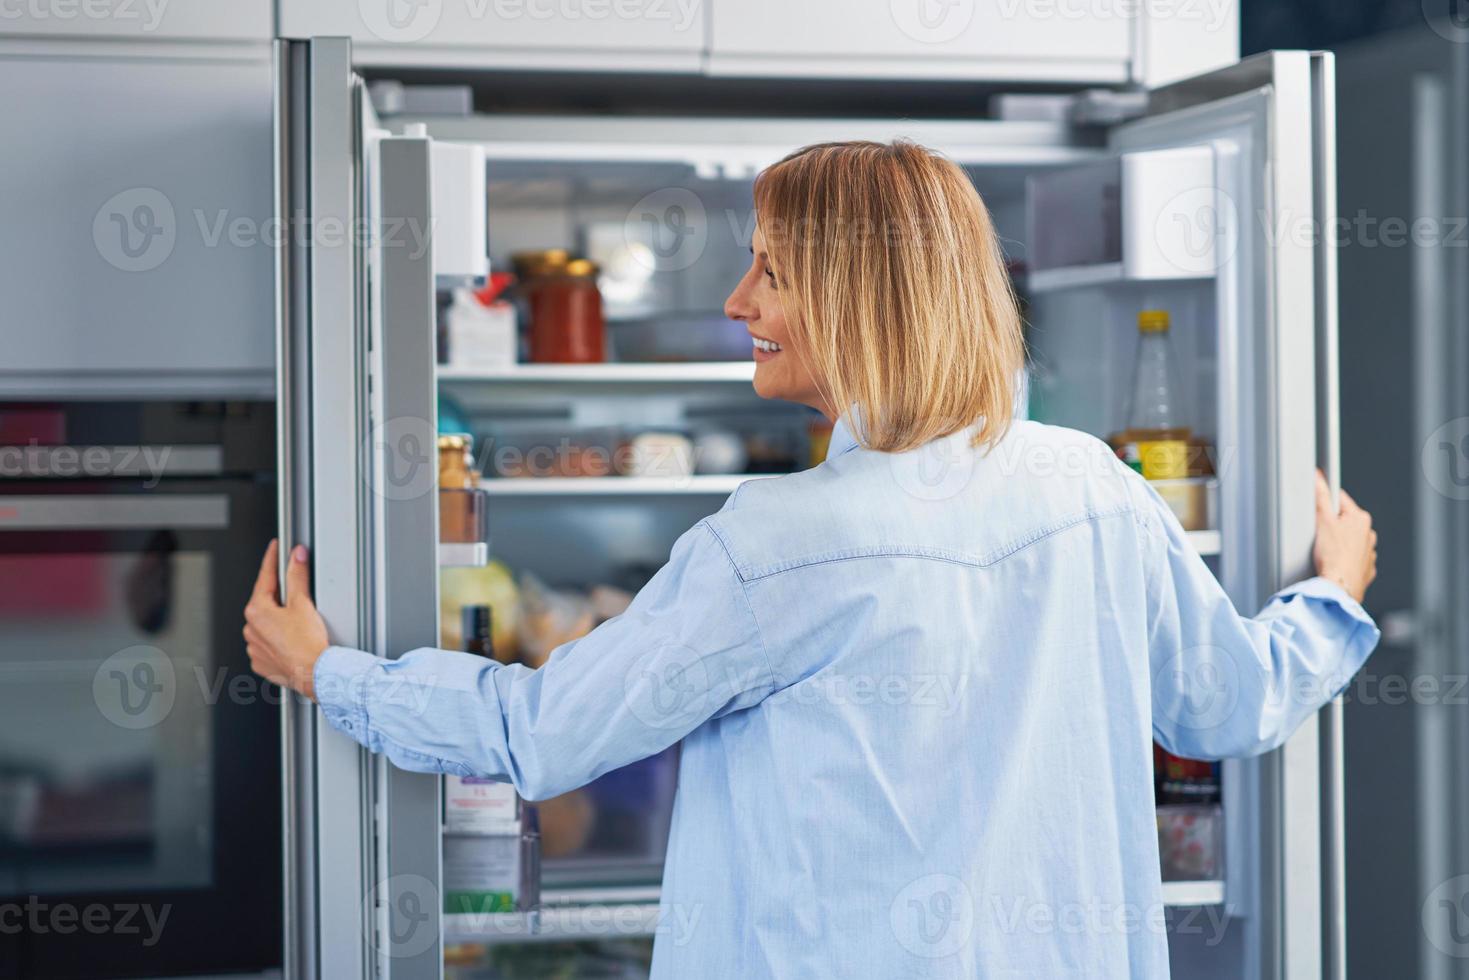 jong volwassen vrouw in de keuken met de koelkast foto